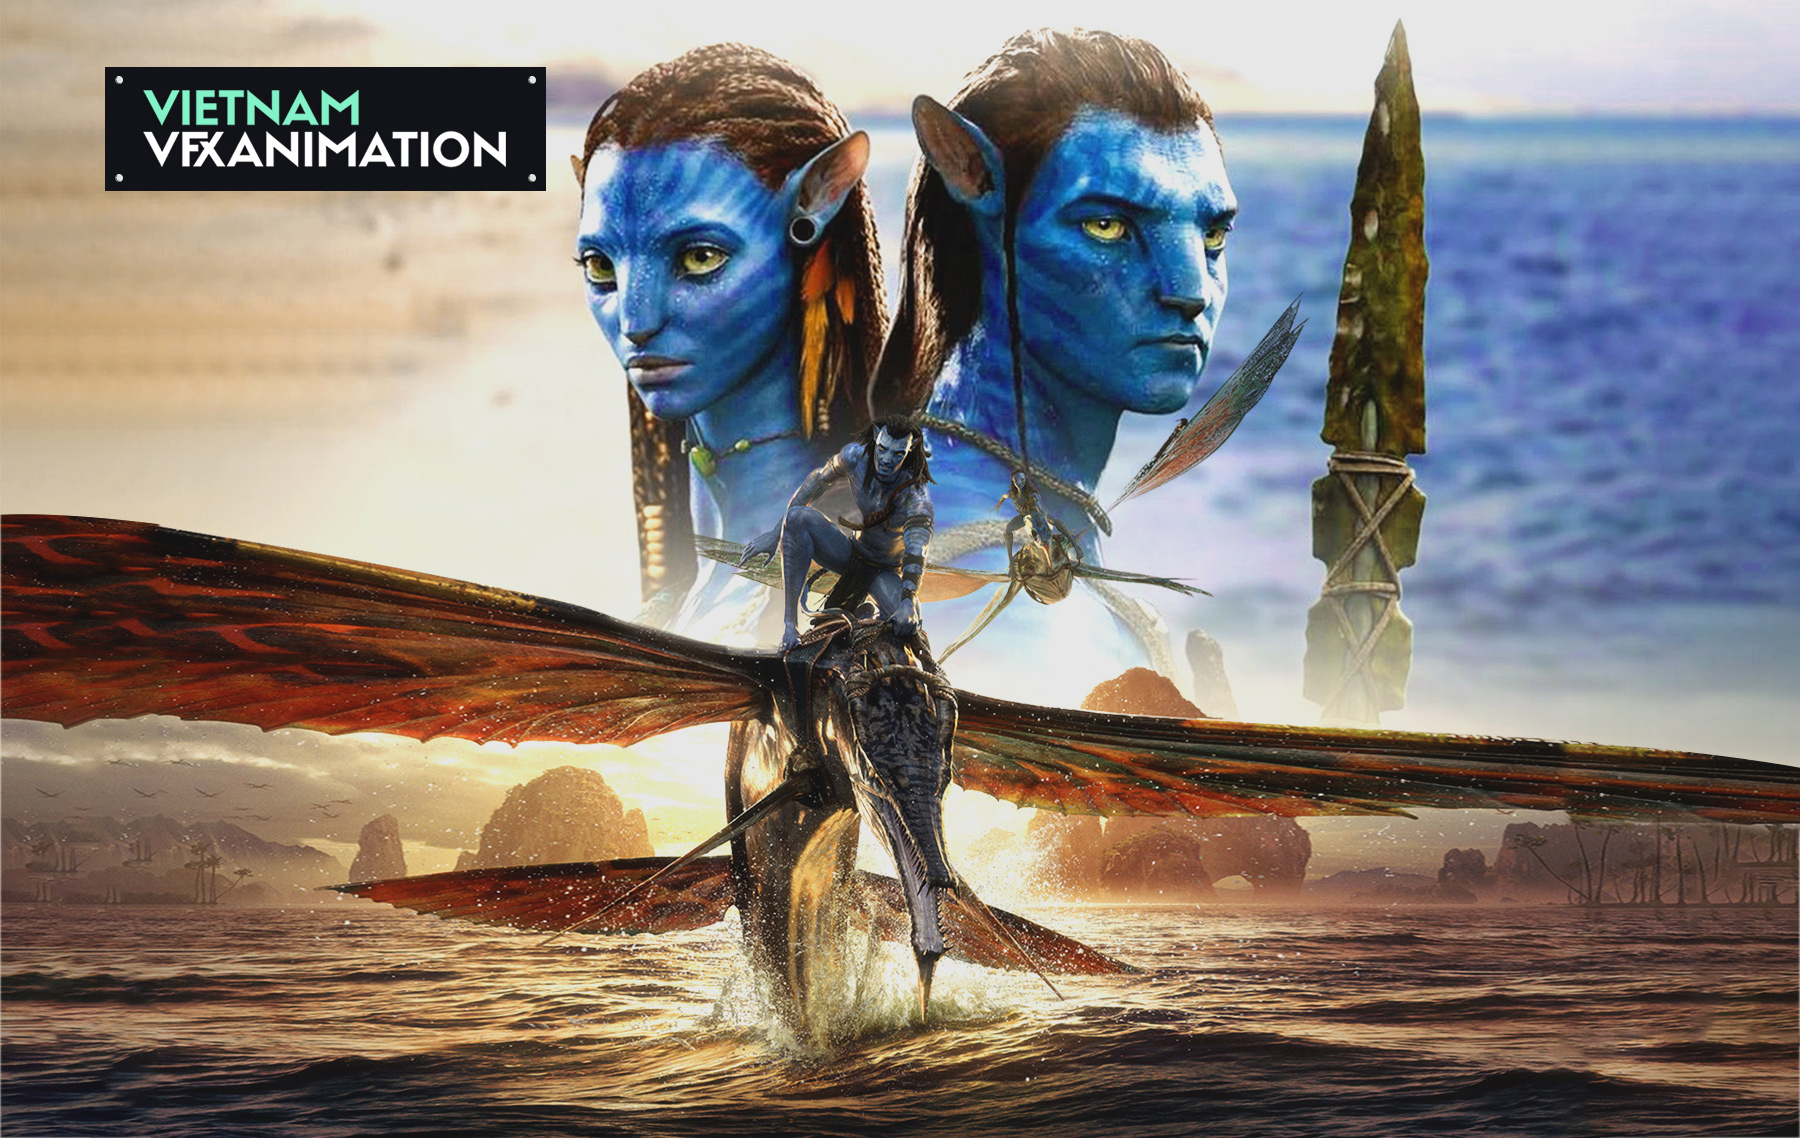 Vẽ Nhiếp Ảnh Vietsub Nghệ Thuật Hoạ  Phác Thảo Avatar png tải về  Miễn  phí trong suốt Nghệ Thuật png Tải về